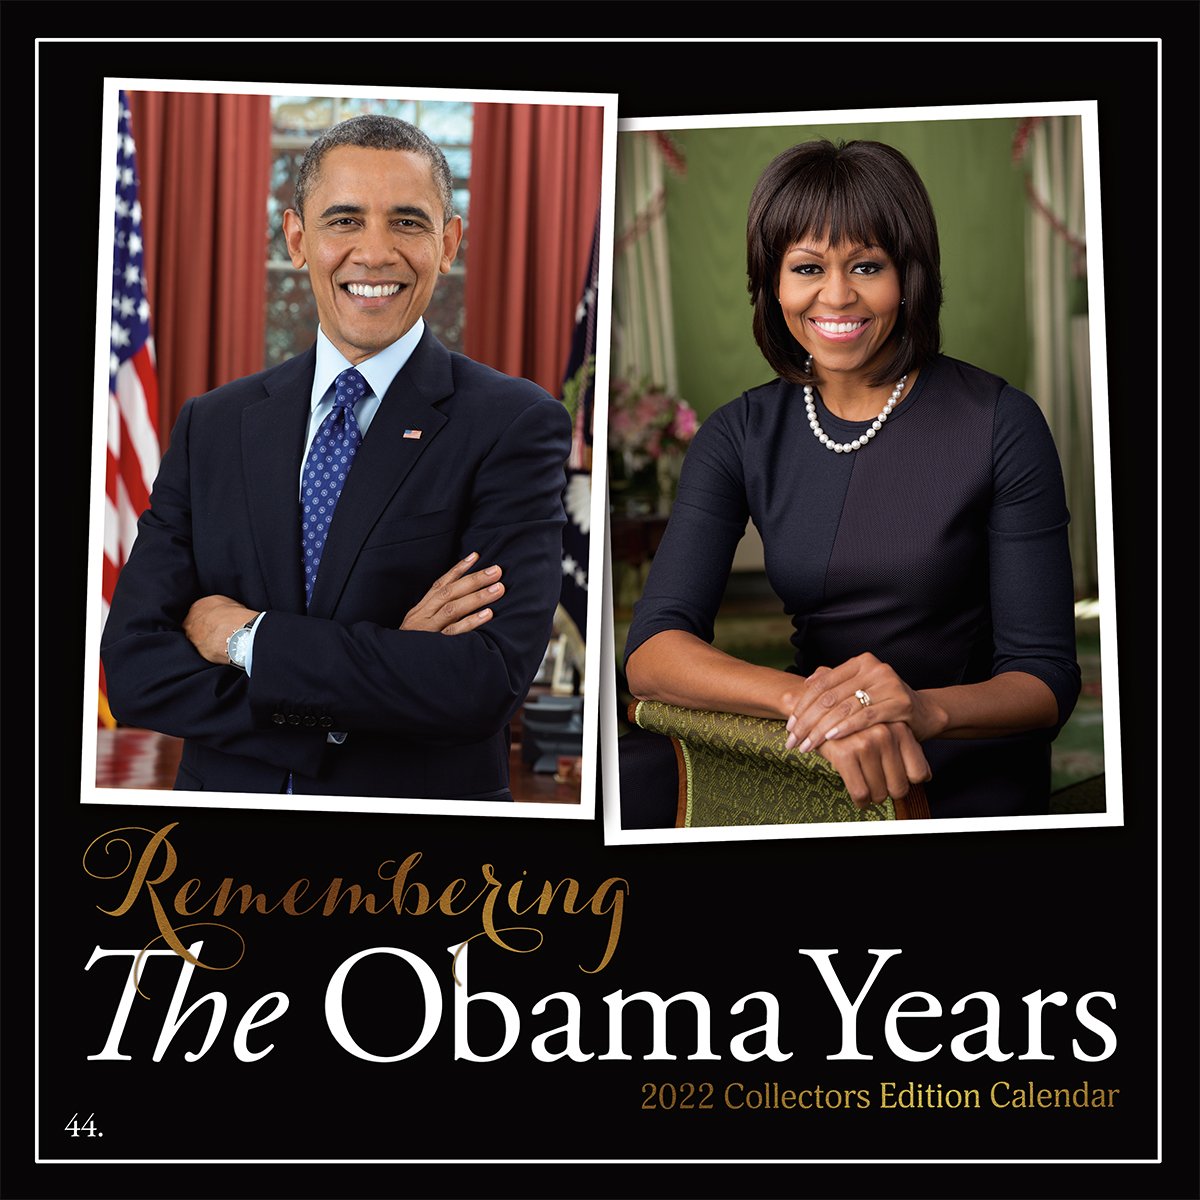 Michelle Obama 2020 Calendar Obama Calendar 